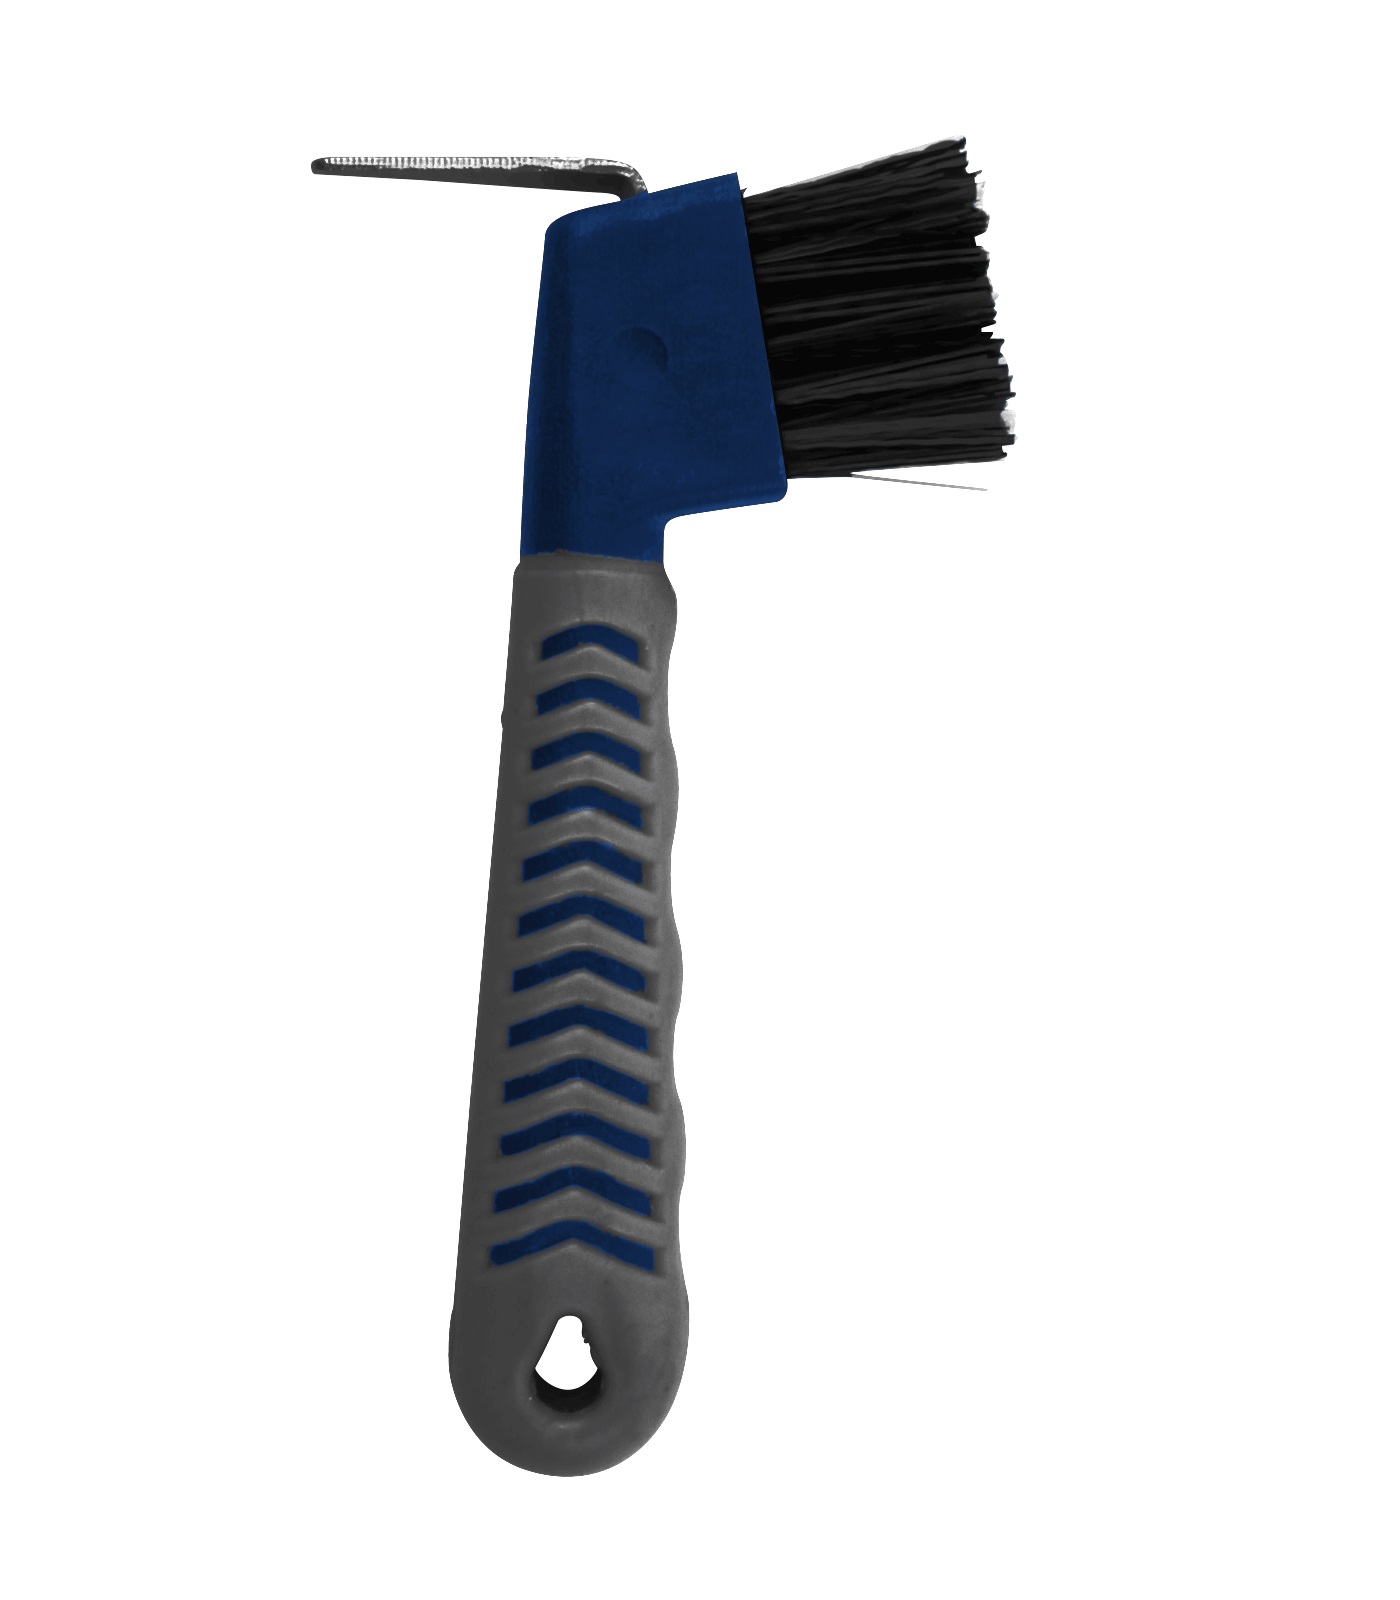 Hufauskratzer mit Grip Griff grau blau